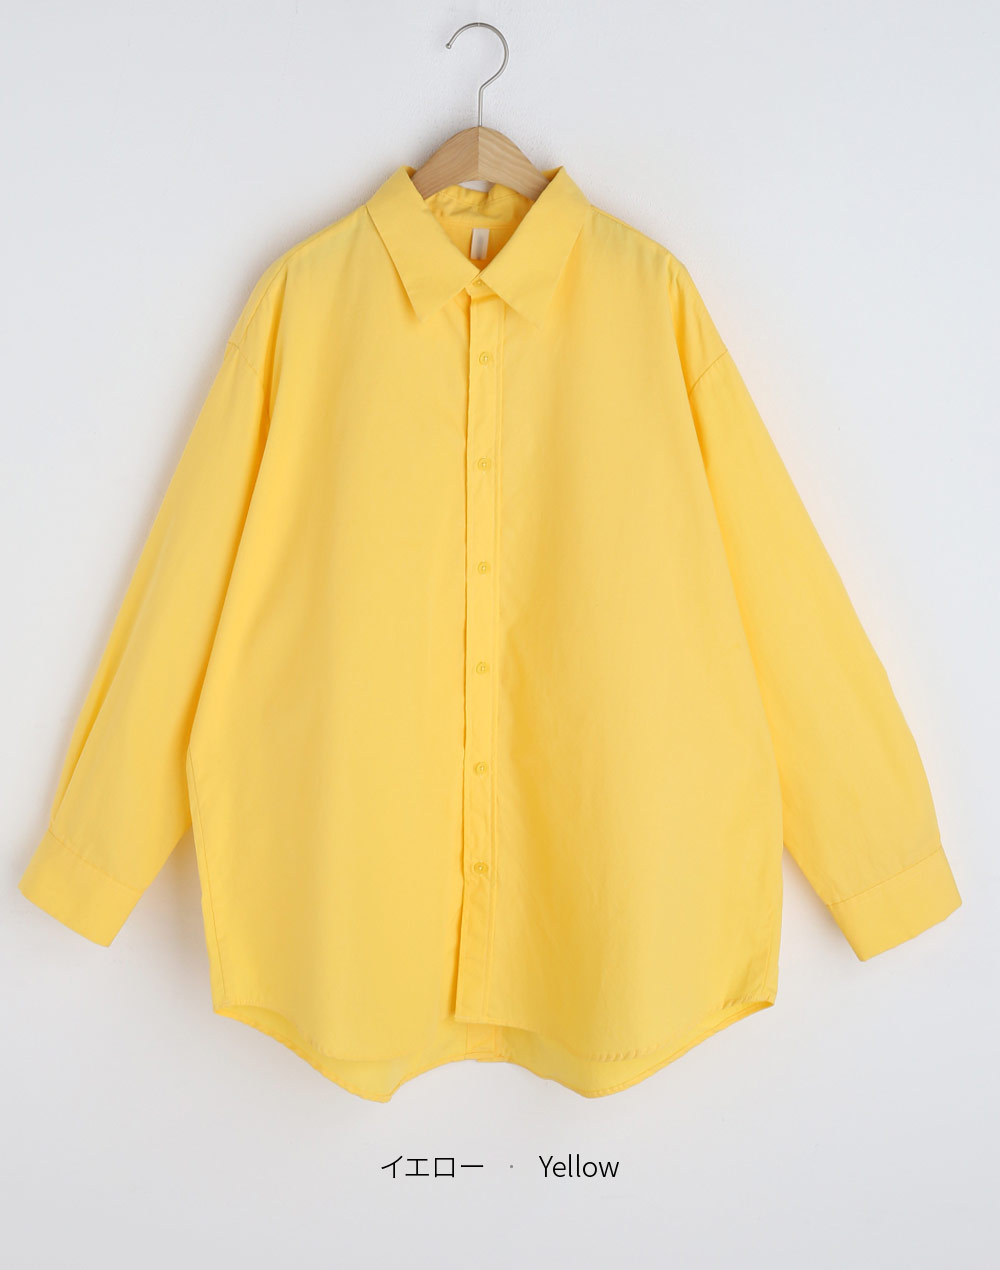 back open button shirt・t275998（ブラウス/シャツ）| hitomi.nakazawa | 東京ガールズマーケット